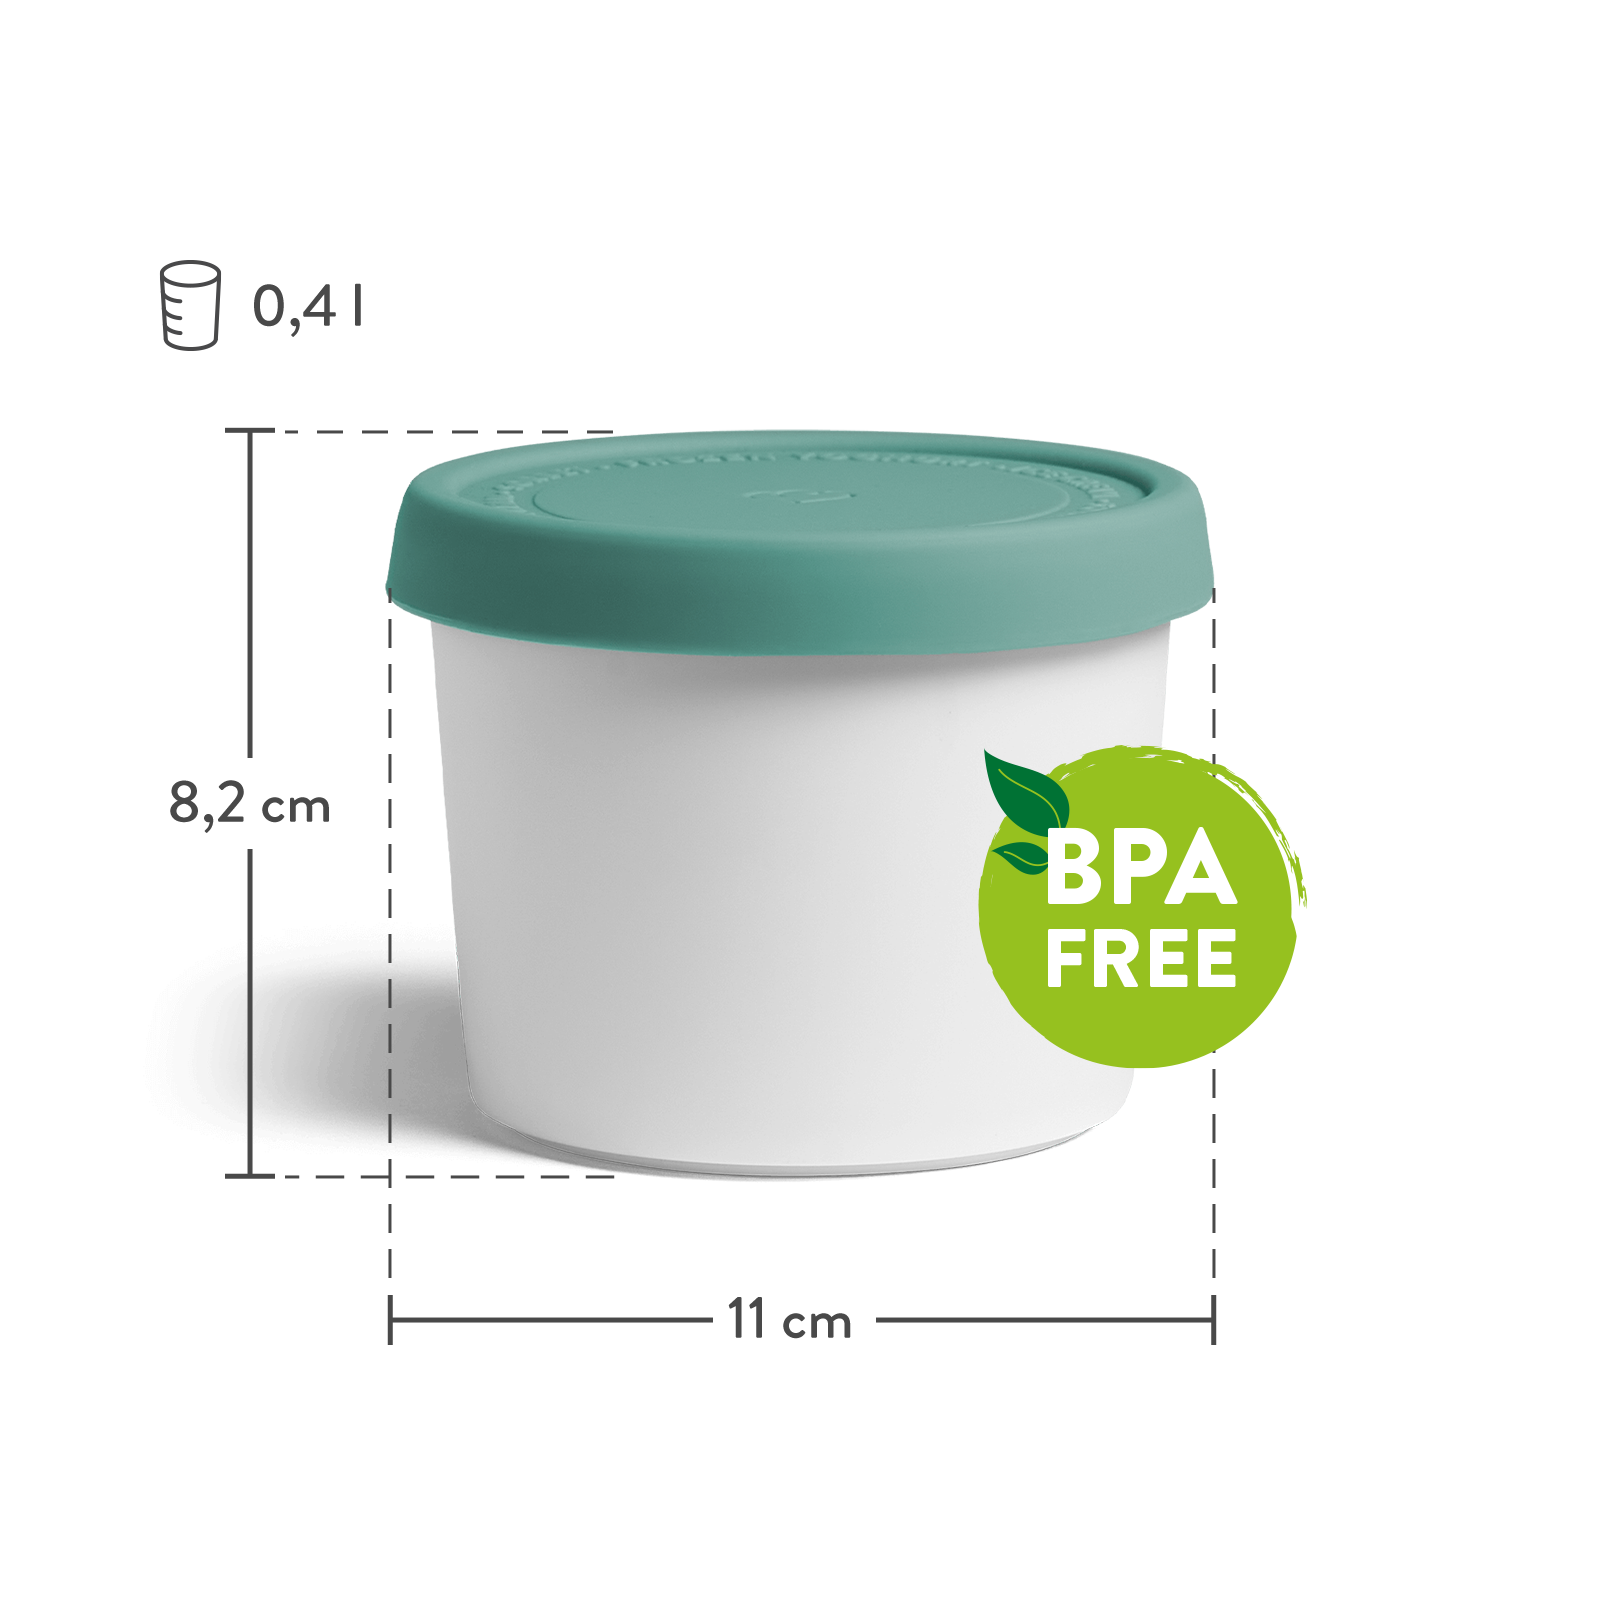 4er-Set Eisbehälter für Speiseeis 400 ml, 8,2 x 11 cm, BPA-frei - Mint/Weiß